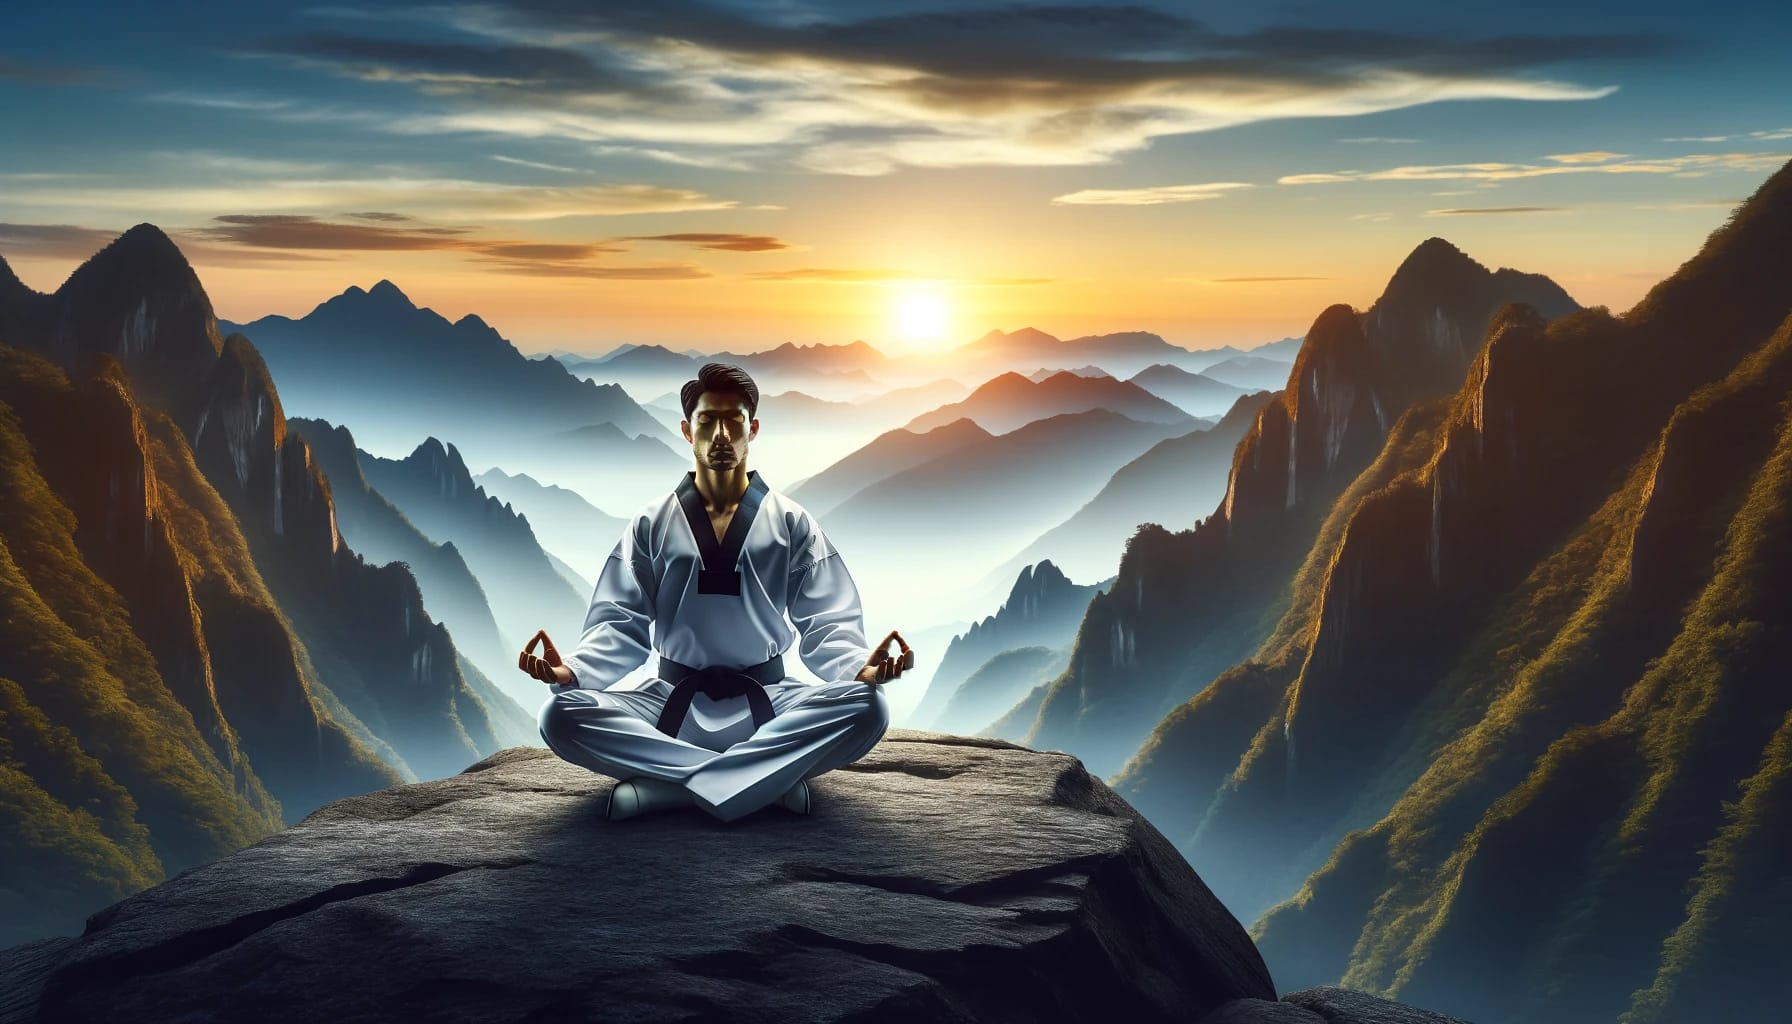 Taekwondo practitioner in meditative pose on mountain at sunrise